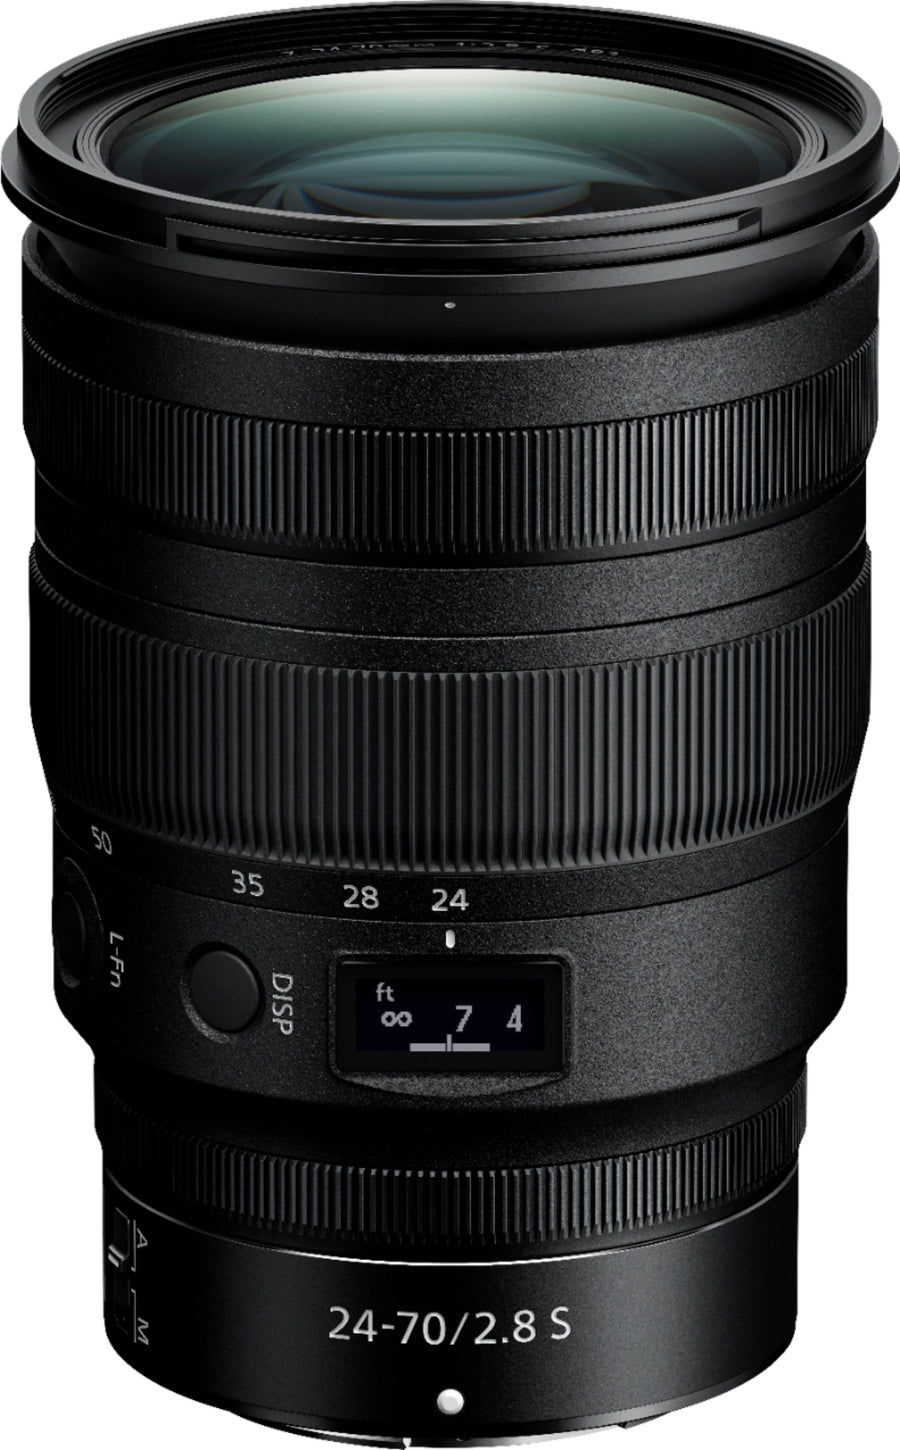 Nikkor Z 24-70mm f/2.8 S Optical Zoom Lens for Nikon Z - Black_0